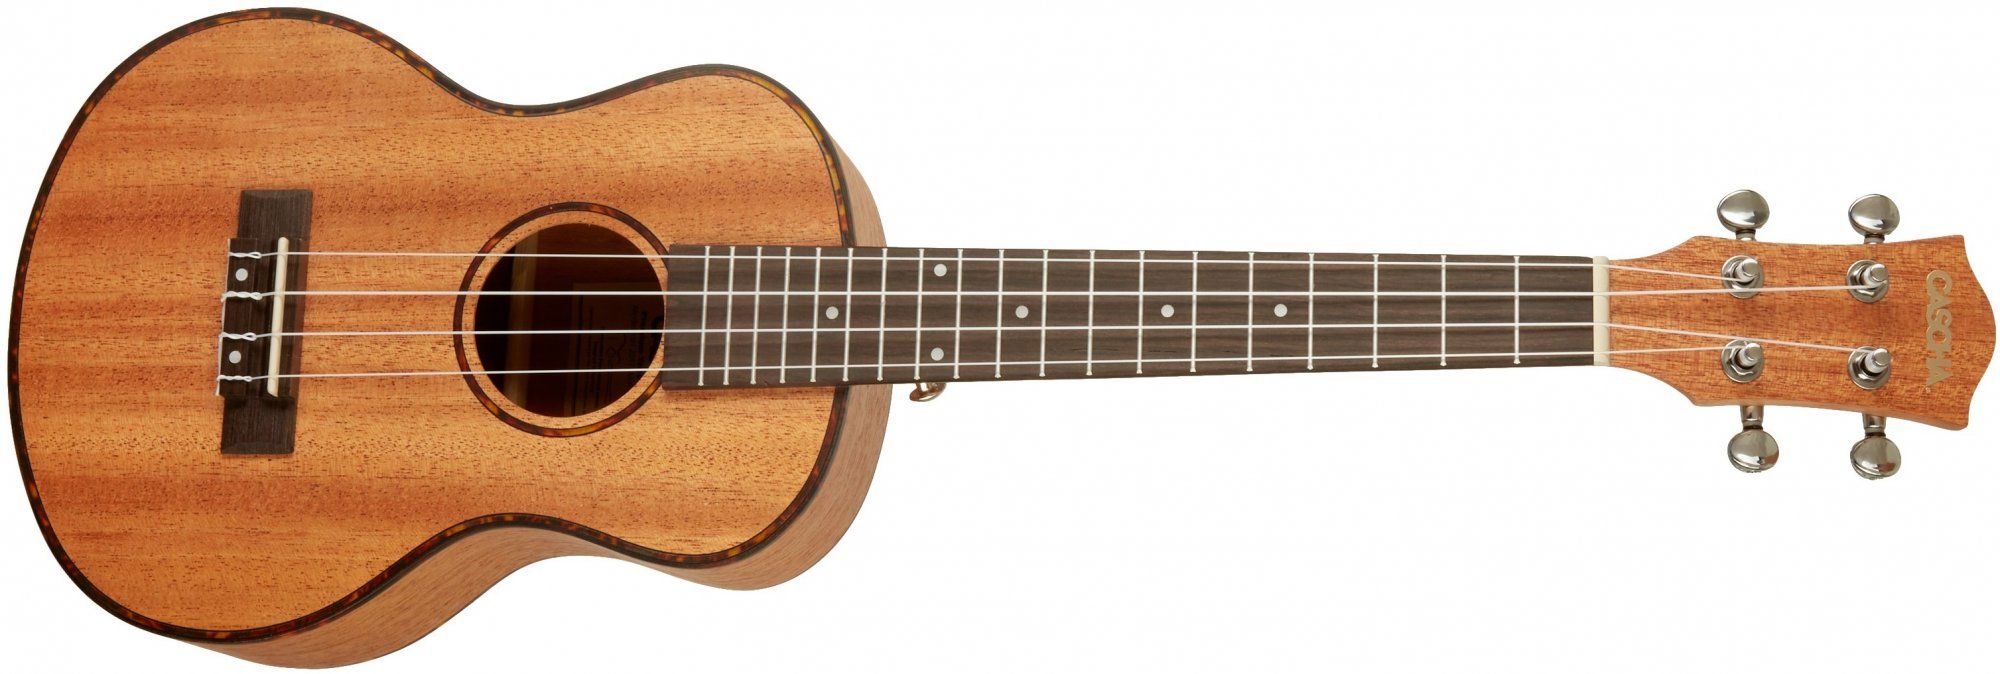  krásné tenorové ukulele Cascha HH 2048 Tenor Mahogany Ukulele Set matná povrchová úprava 19 pražců plnohodnotný zvuk zhotovené z mahagonového dřeva bohatá výbava krásné také jako dárek  